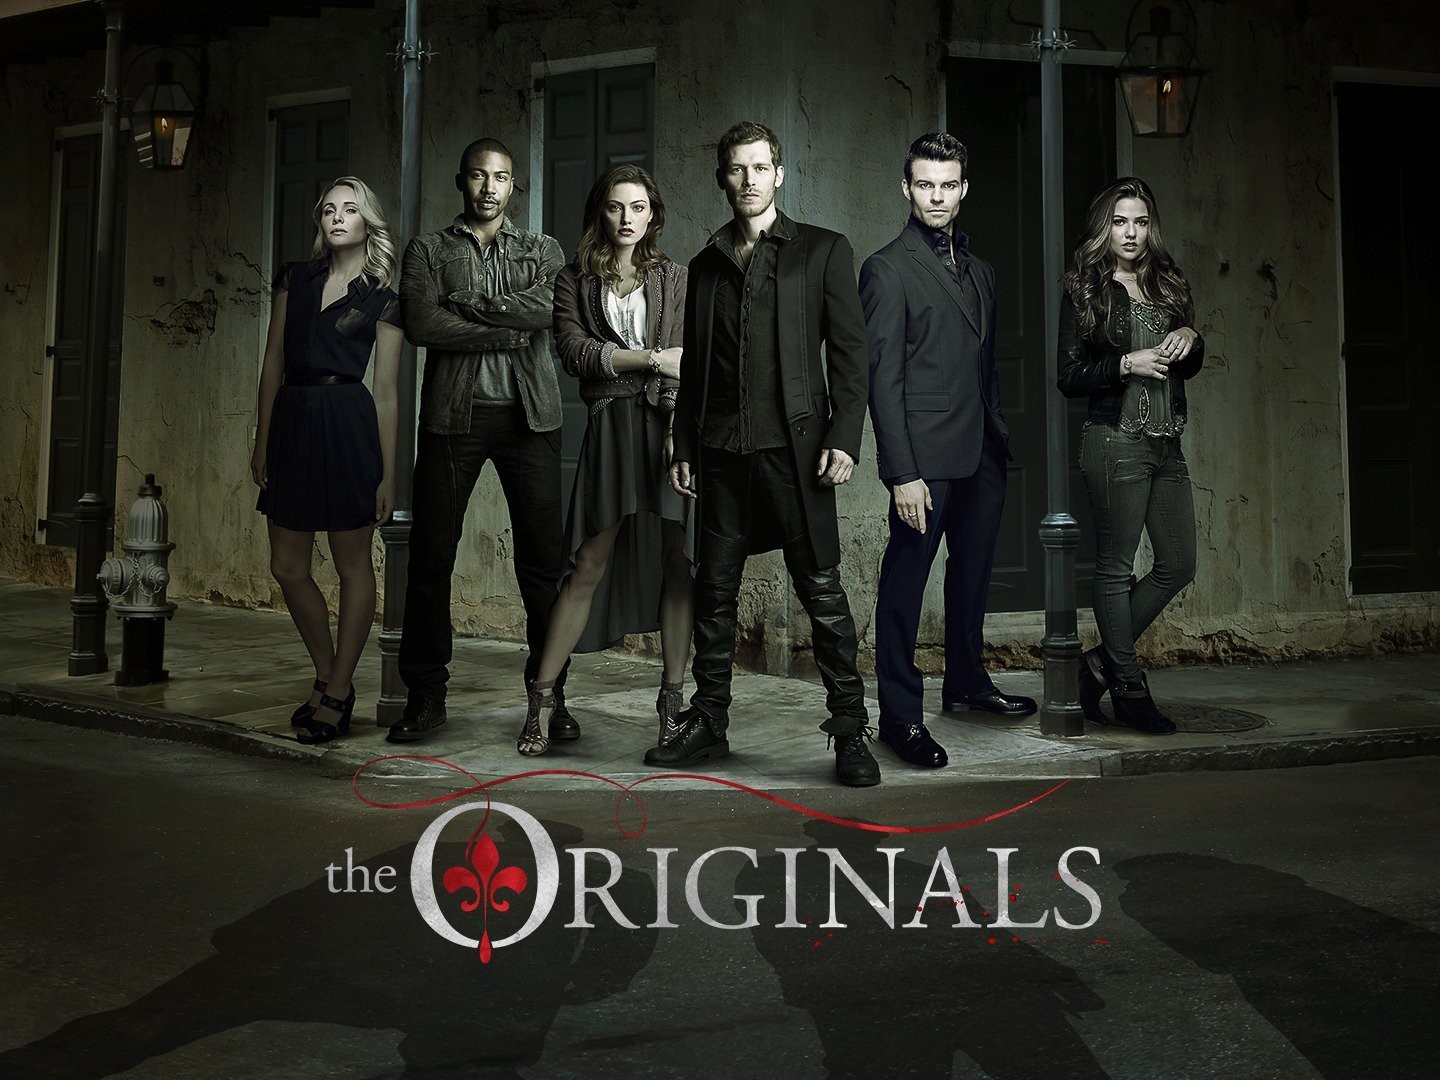 The Originals (season 3) - Wikipedia